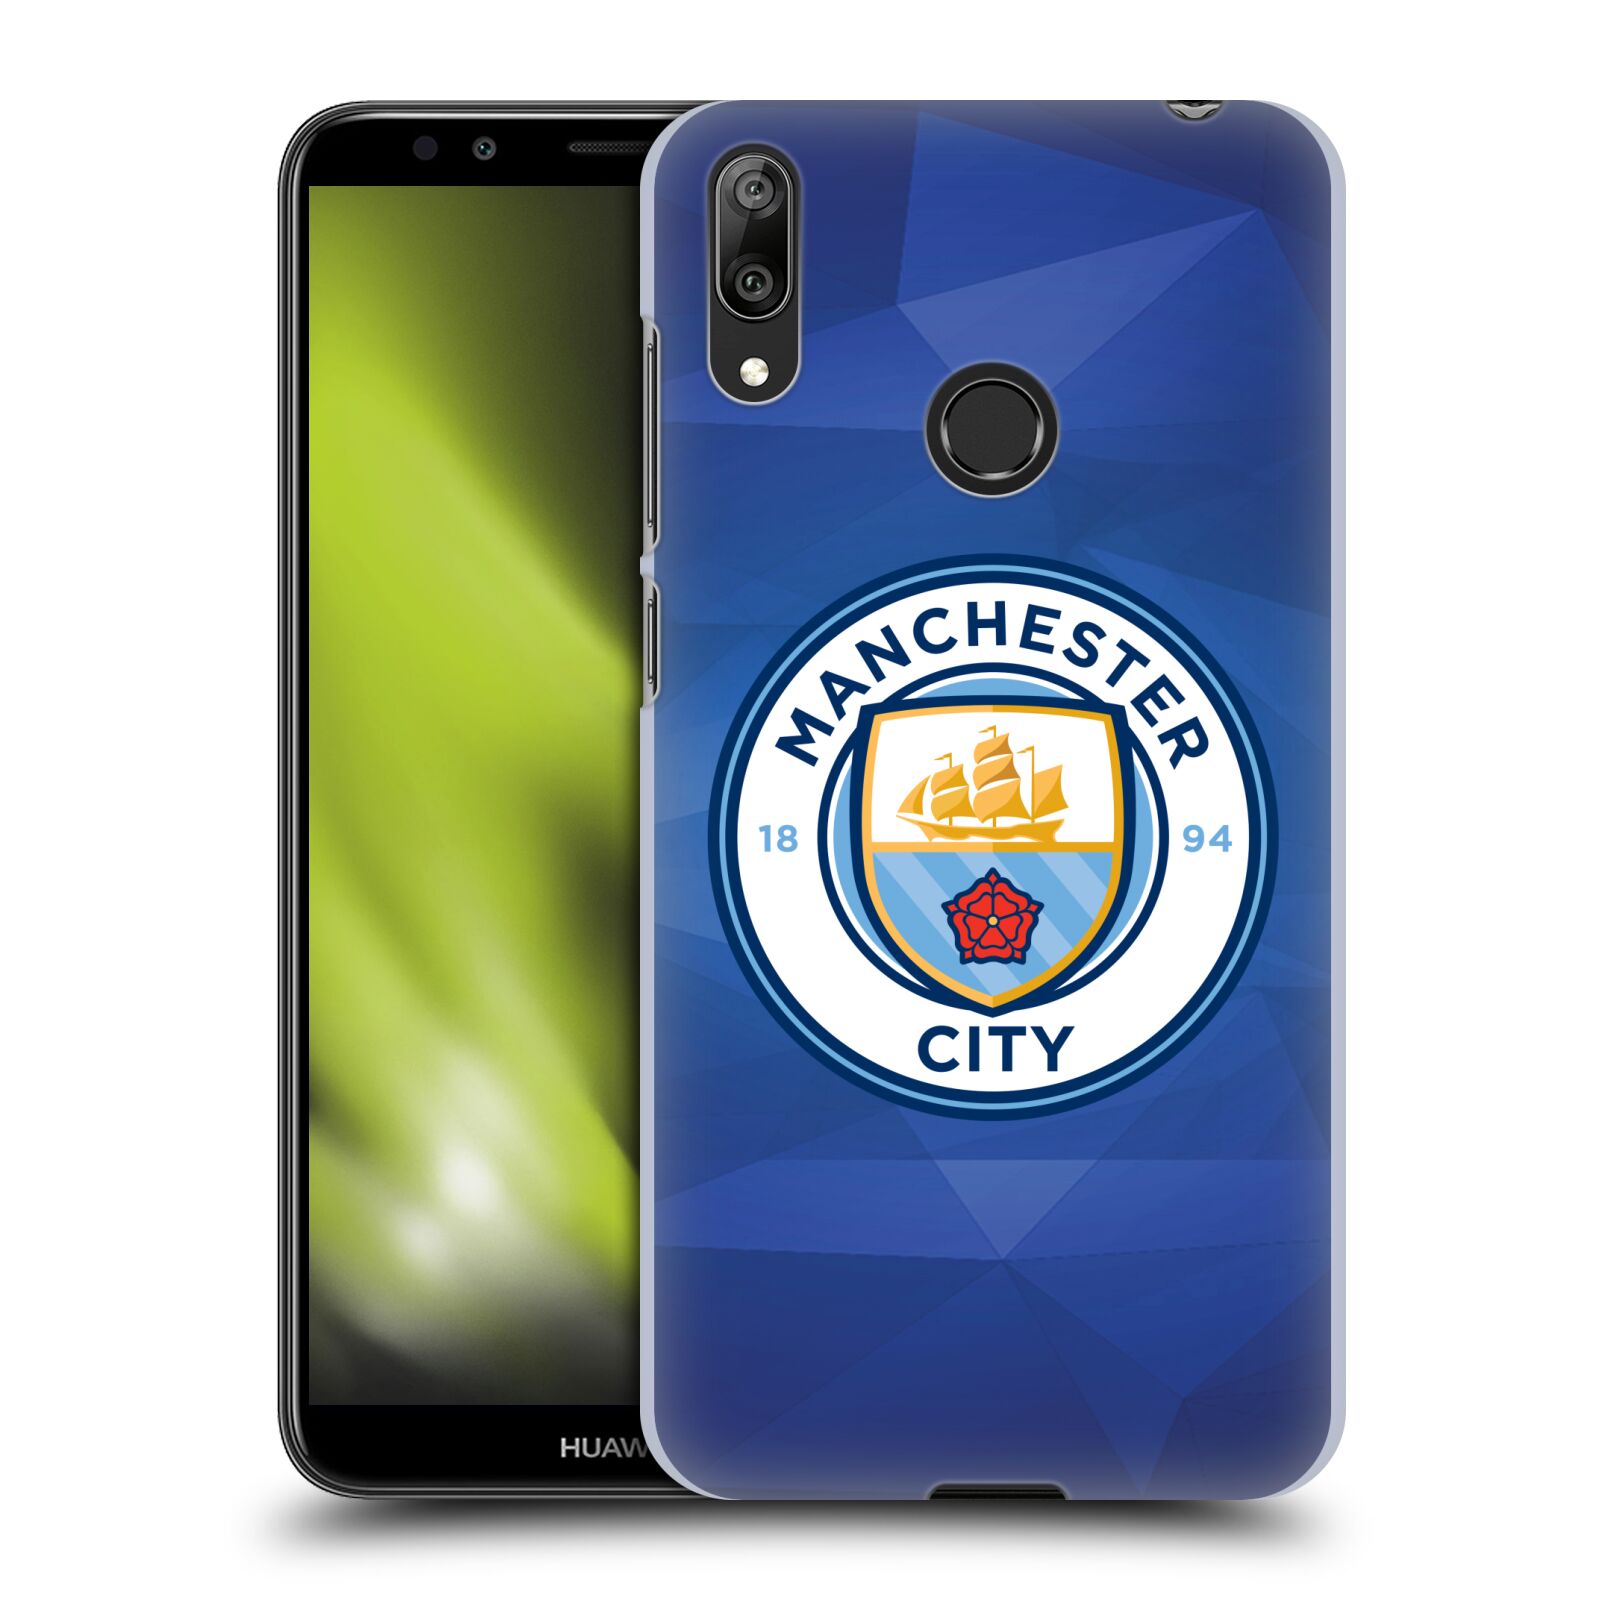 Plastové pouzdro na mobil Huawei Y7 (2019) - Head Case - Manchester City FC - Modré nové logo (Plastový kryt, pouzdro, obal na mobilní telefon Huawei Y7 2019 s motivem Manchester City FC - Modré nové logo)